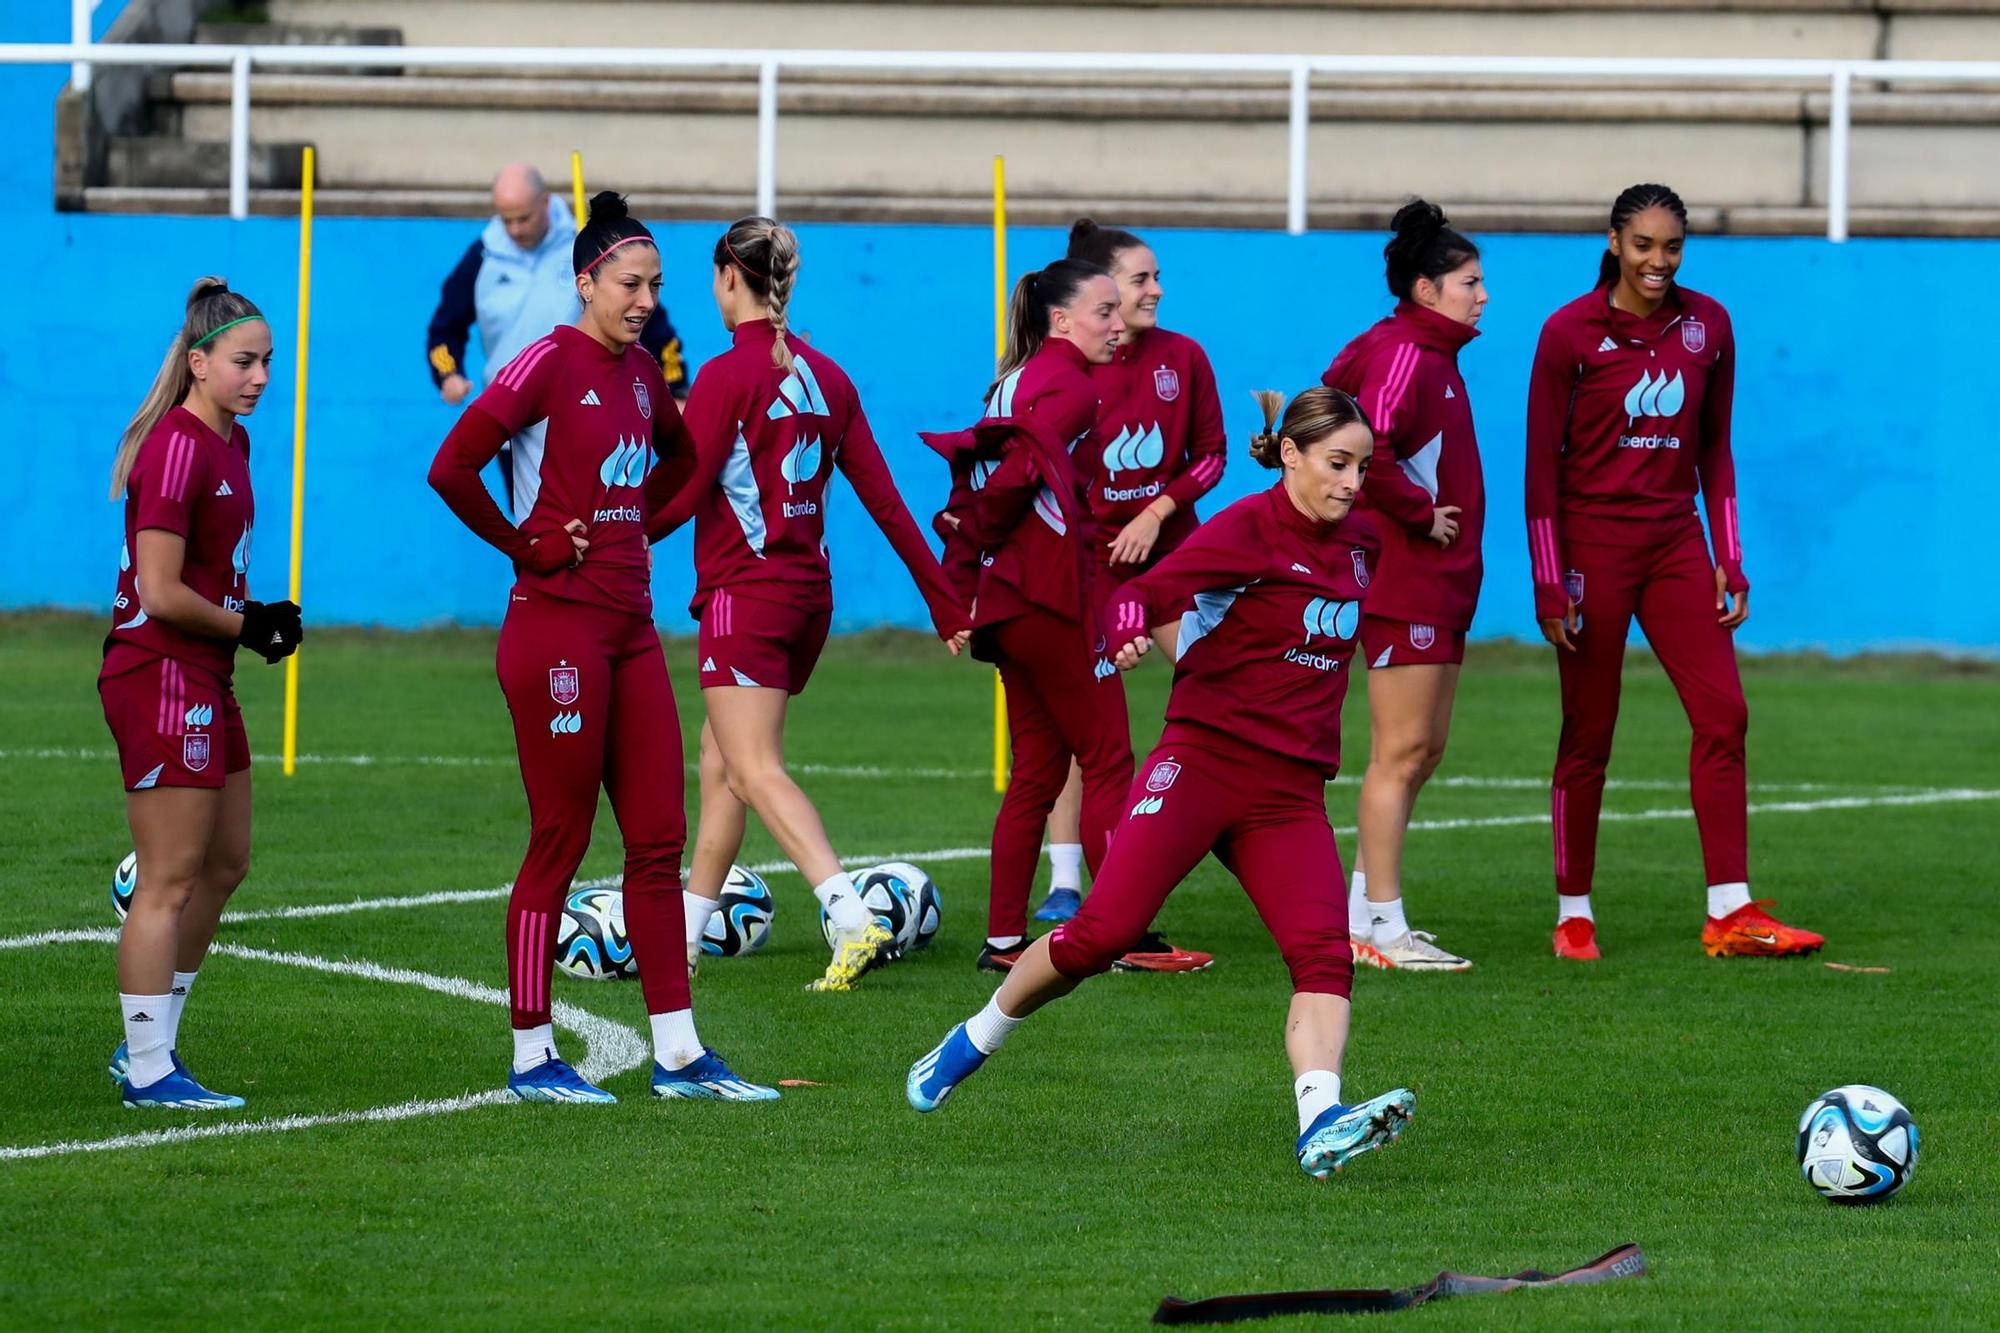 La selección femenina de fútbol ya se entrena en el estadio de Burgáns